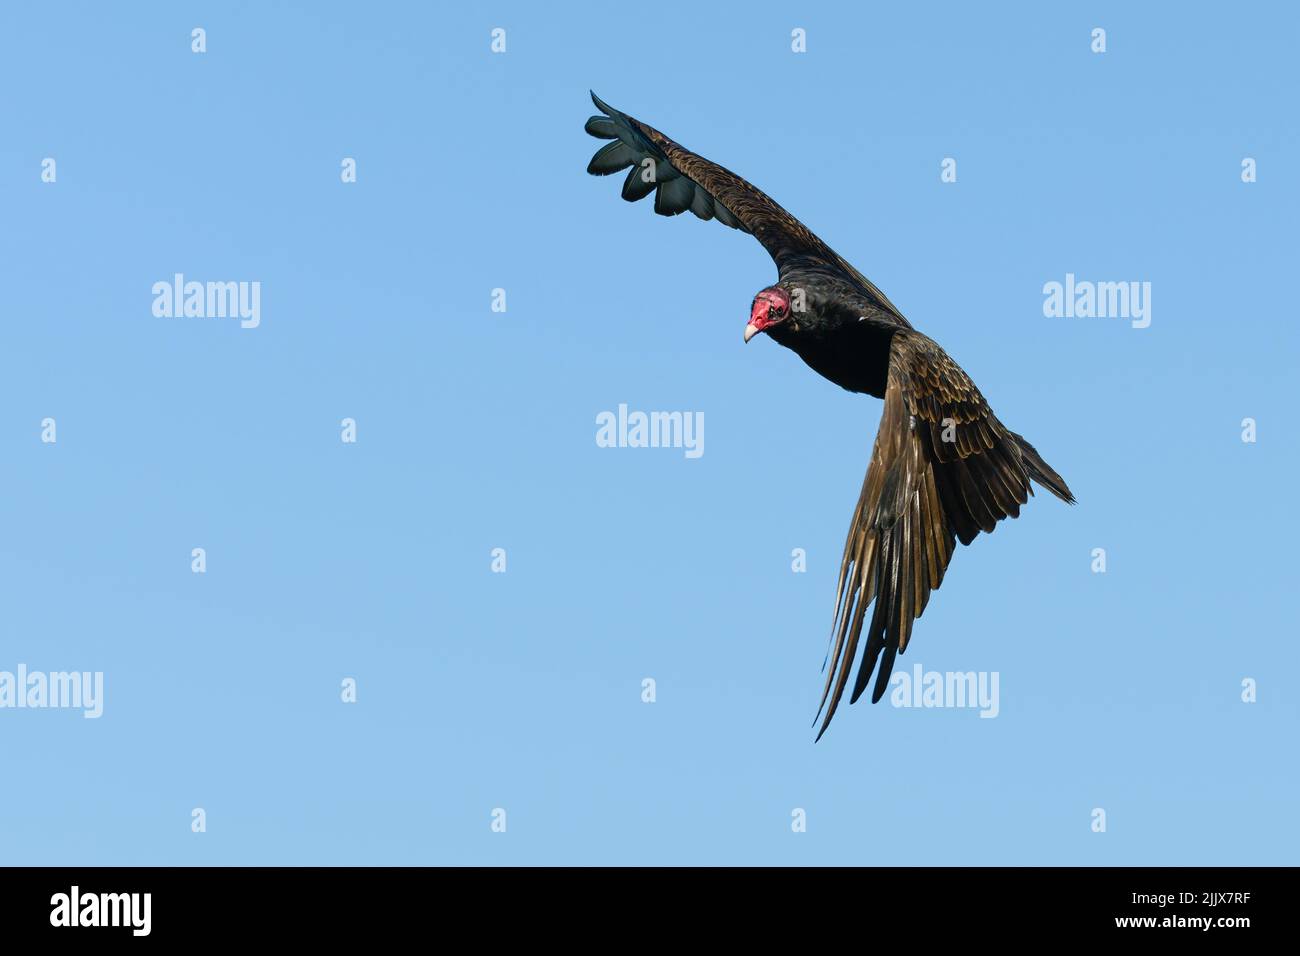 Tacchino Vulture amplia una svolta radicale contro un cielo blu isolato. La testa rossa contrasta con le ali scure e il corpo Foto Stock